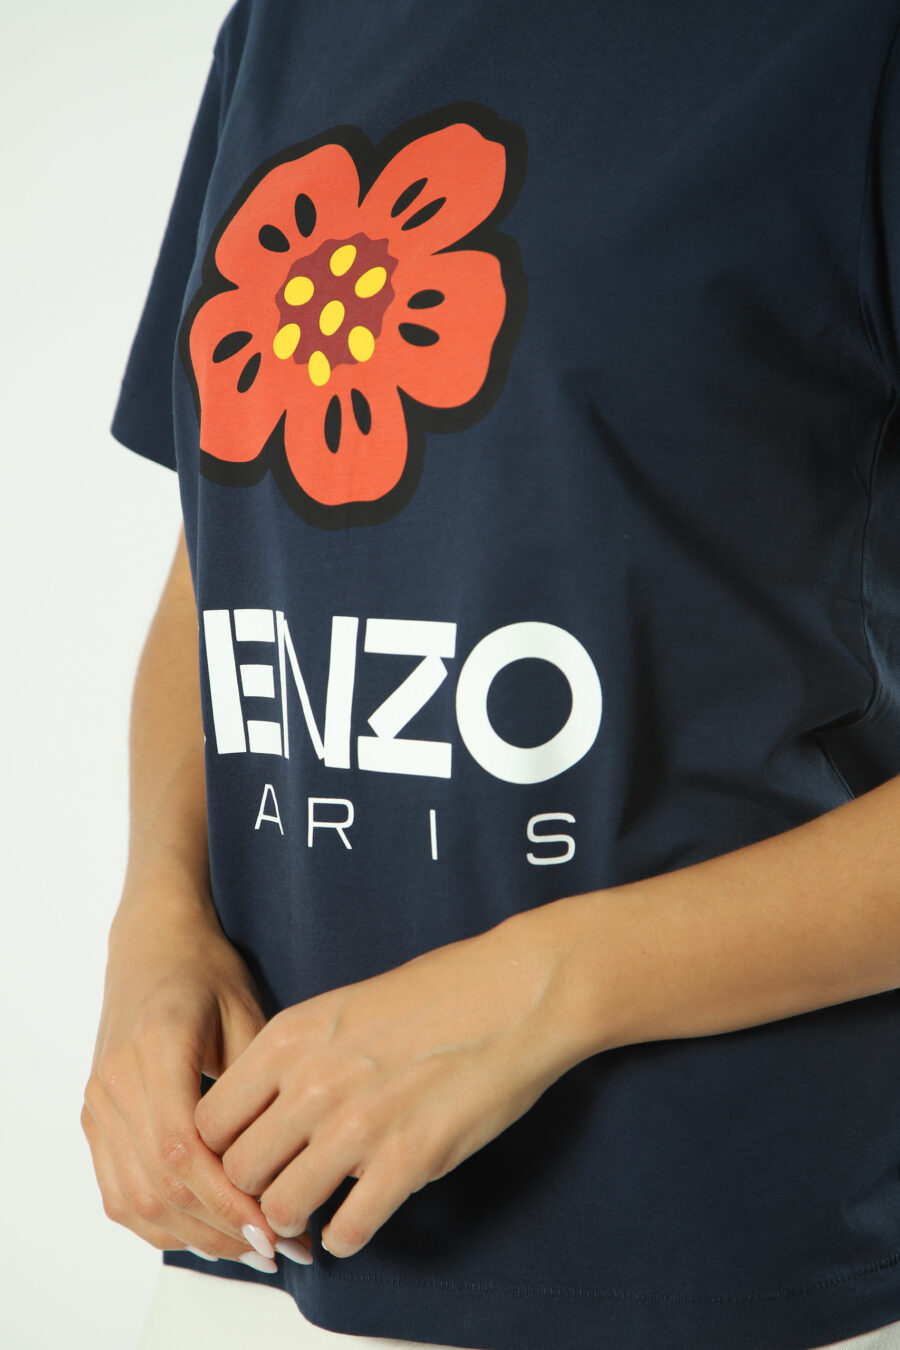 T-shirt azul com maxilogo de flores cor de laranja - Fotos 1400